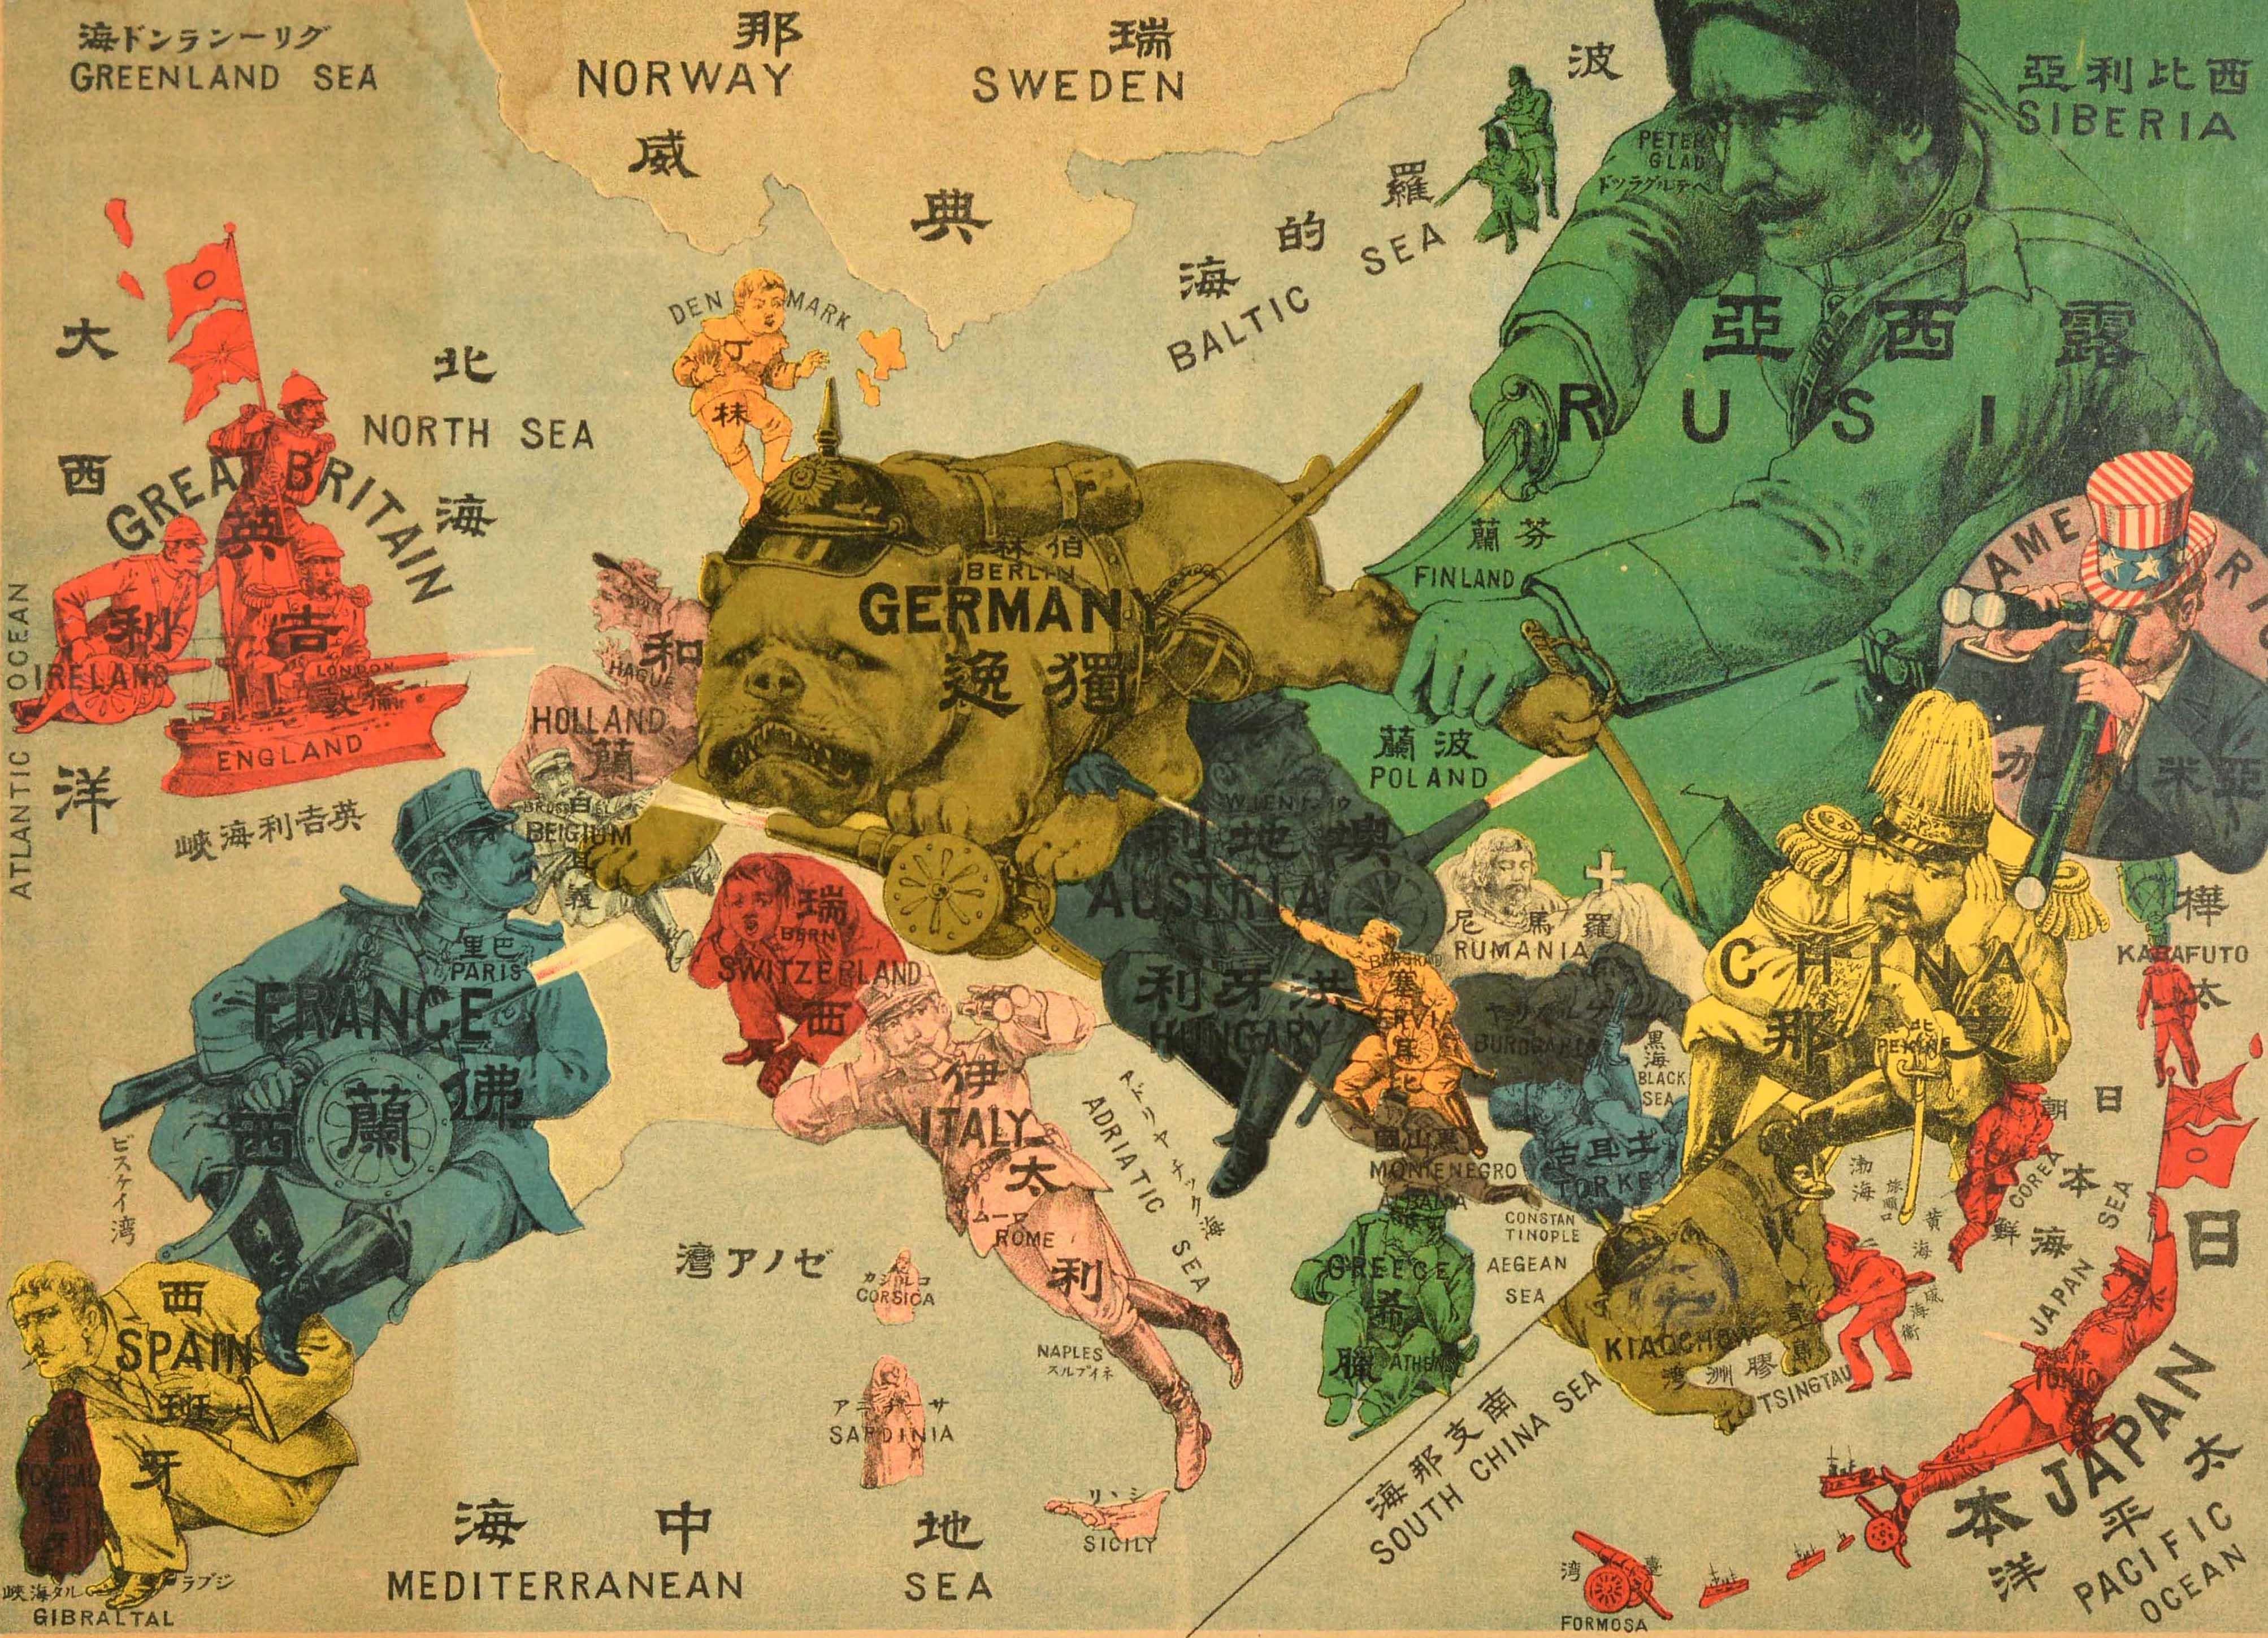 Ancienne carte satirique originale de l'Europe et de l'Asie de la Première Guerre mondiale illustrant le début de la Première Guerre mondiale, avec des caricatures et des illustrations colorées des pays. L'Allemagne est représentée par un bouledogue